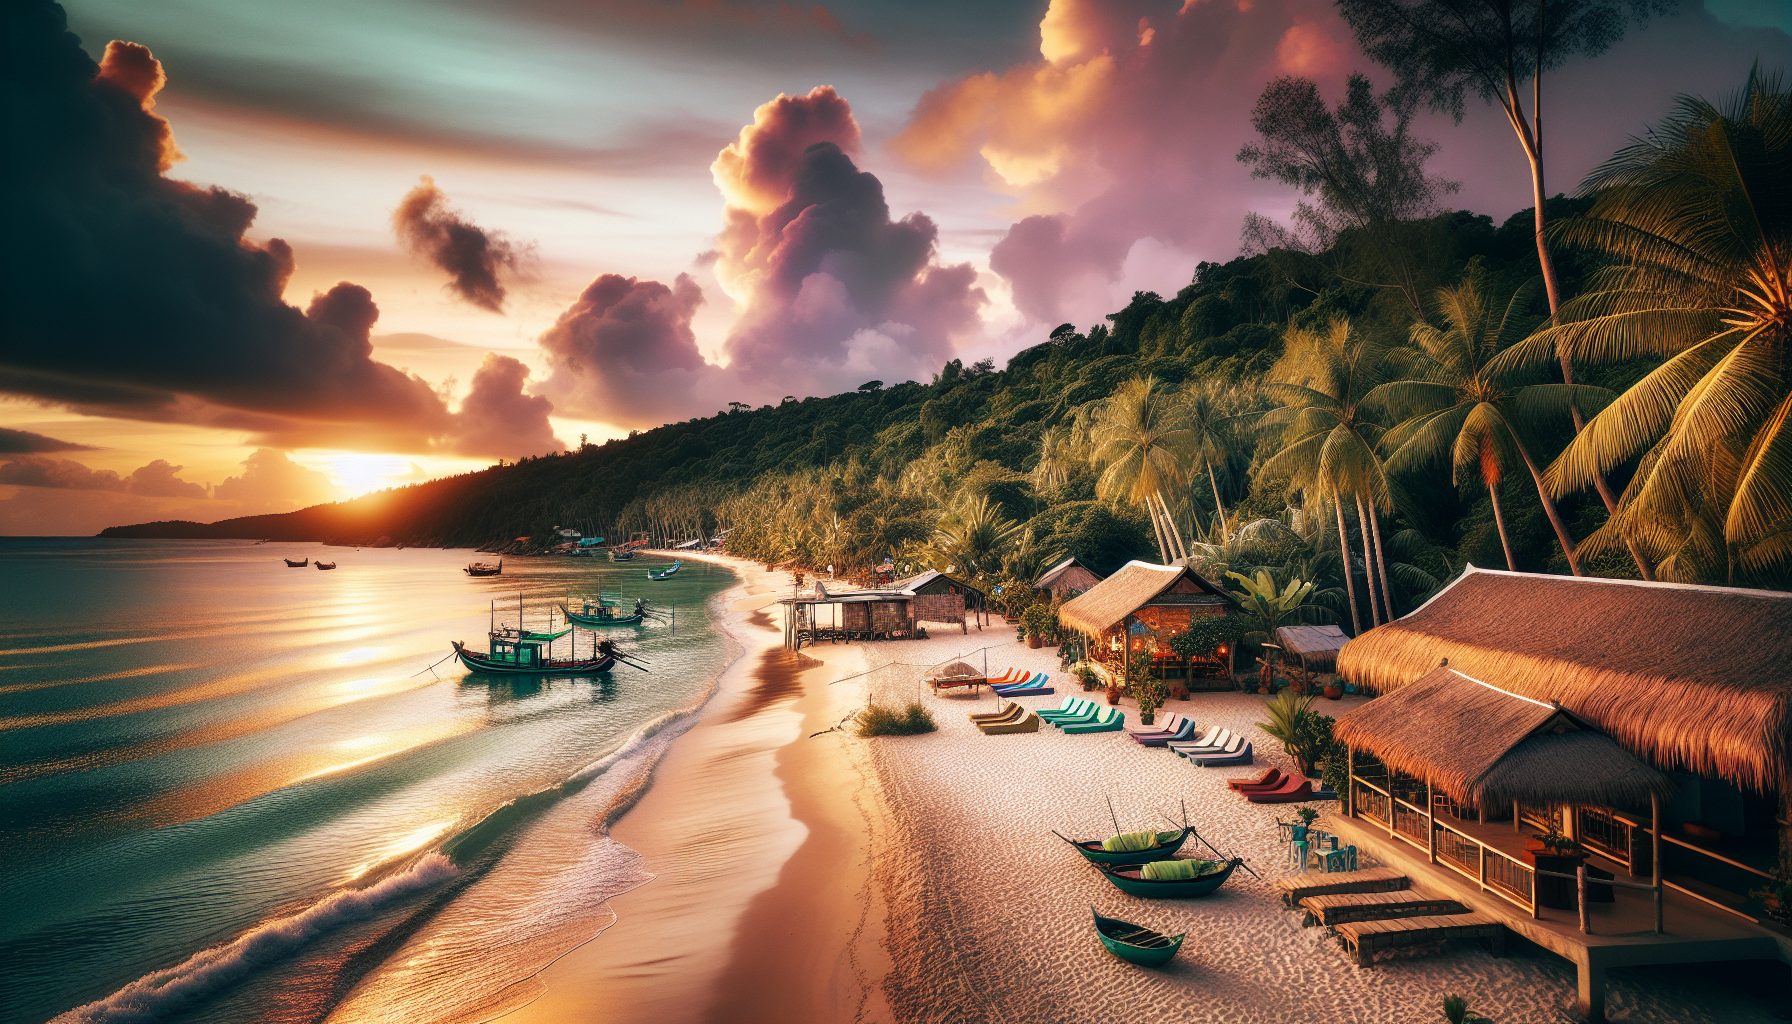 Khám phá bãi biển Phú Quốc - một trong những điểm đến nổi tiếng của Việt Nam.